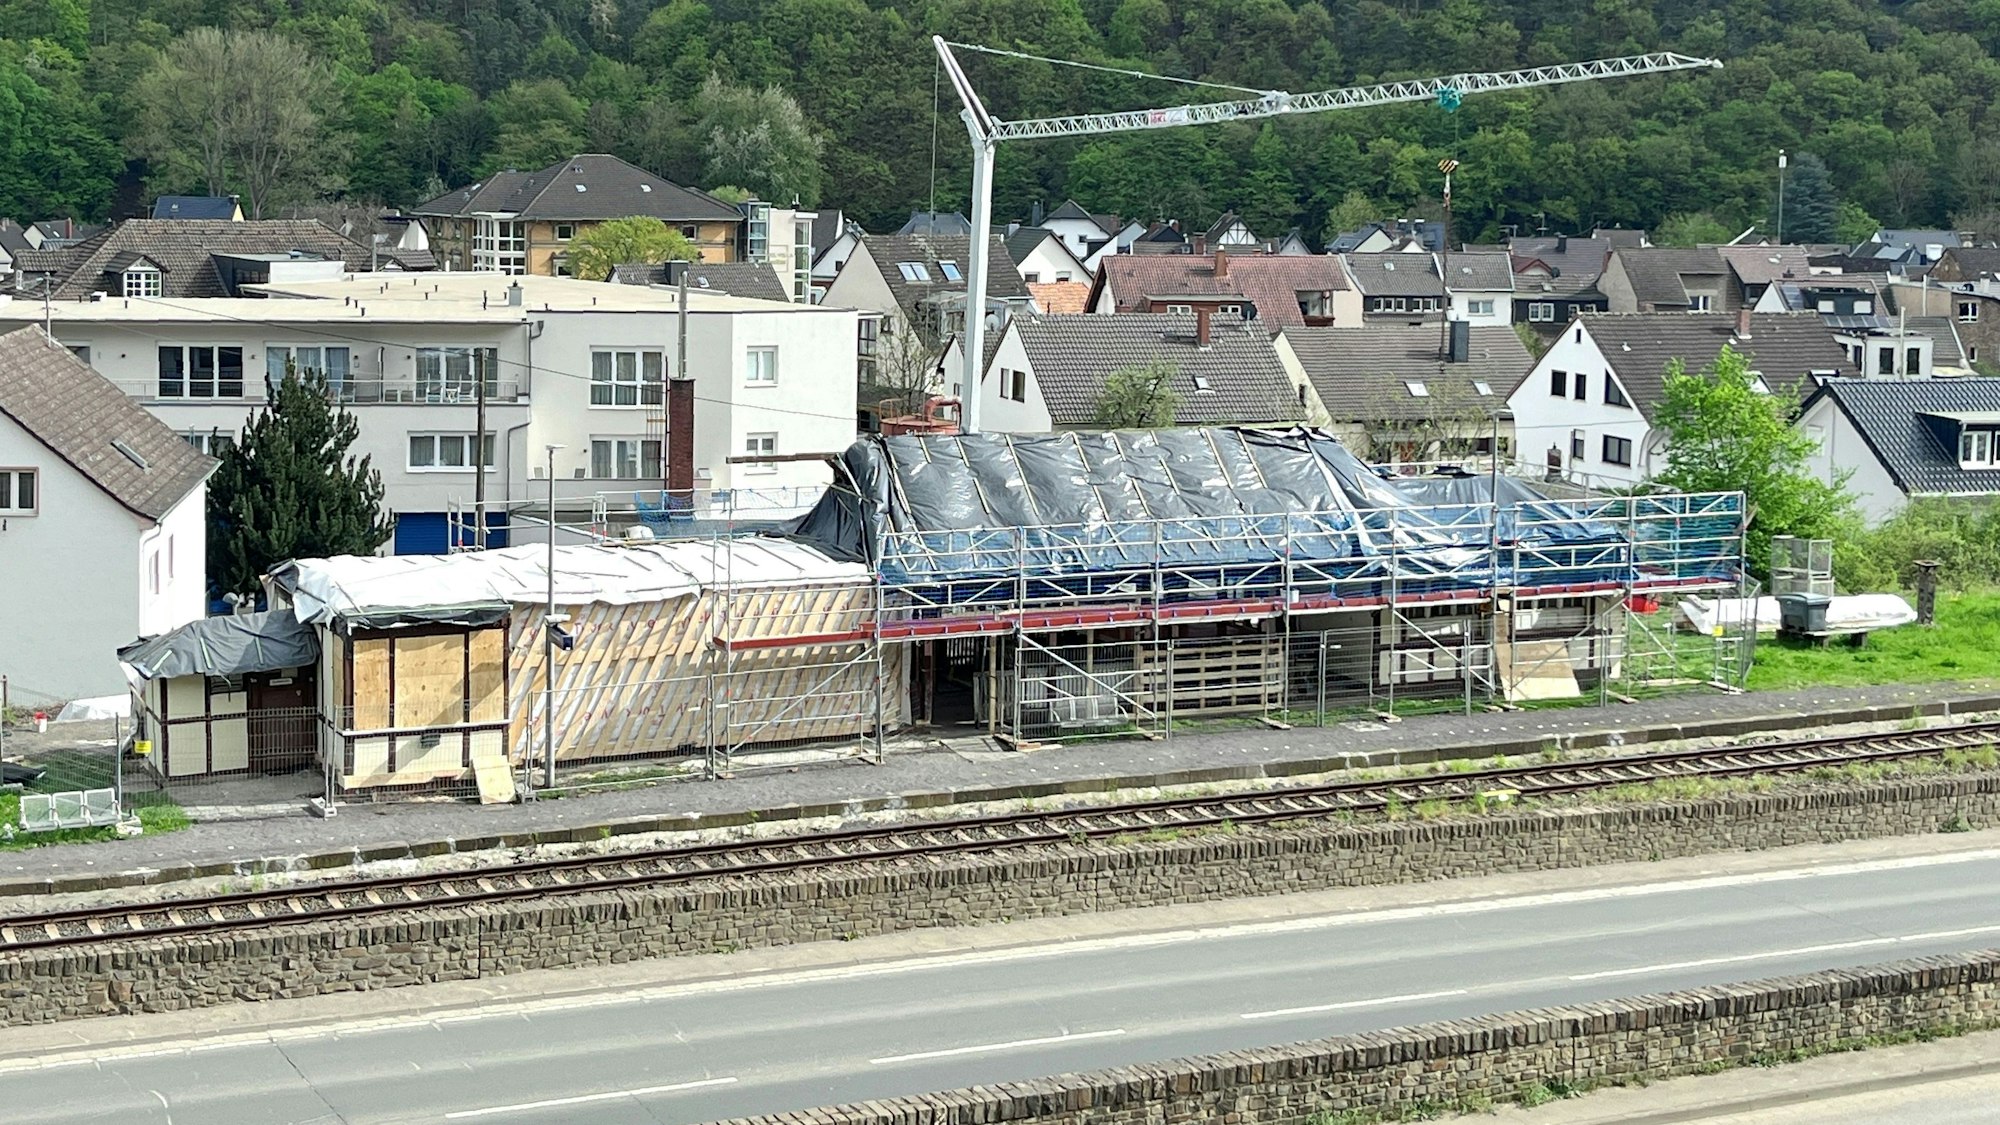 Baustelle zum Abbau des im Stadtteil Walporzheim der Stadt Bad Neuenahr-Ahrweiler gelegenen Bahnhofs. Im Vordergrund verlaufen eine Straße und die Bahnlinie, hinter dem Gebäude steht ein Baukran.